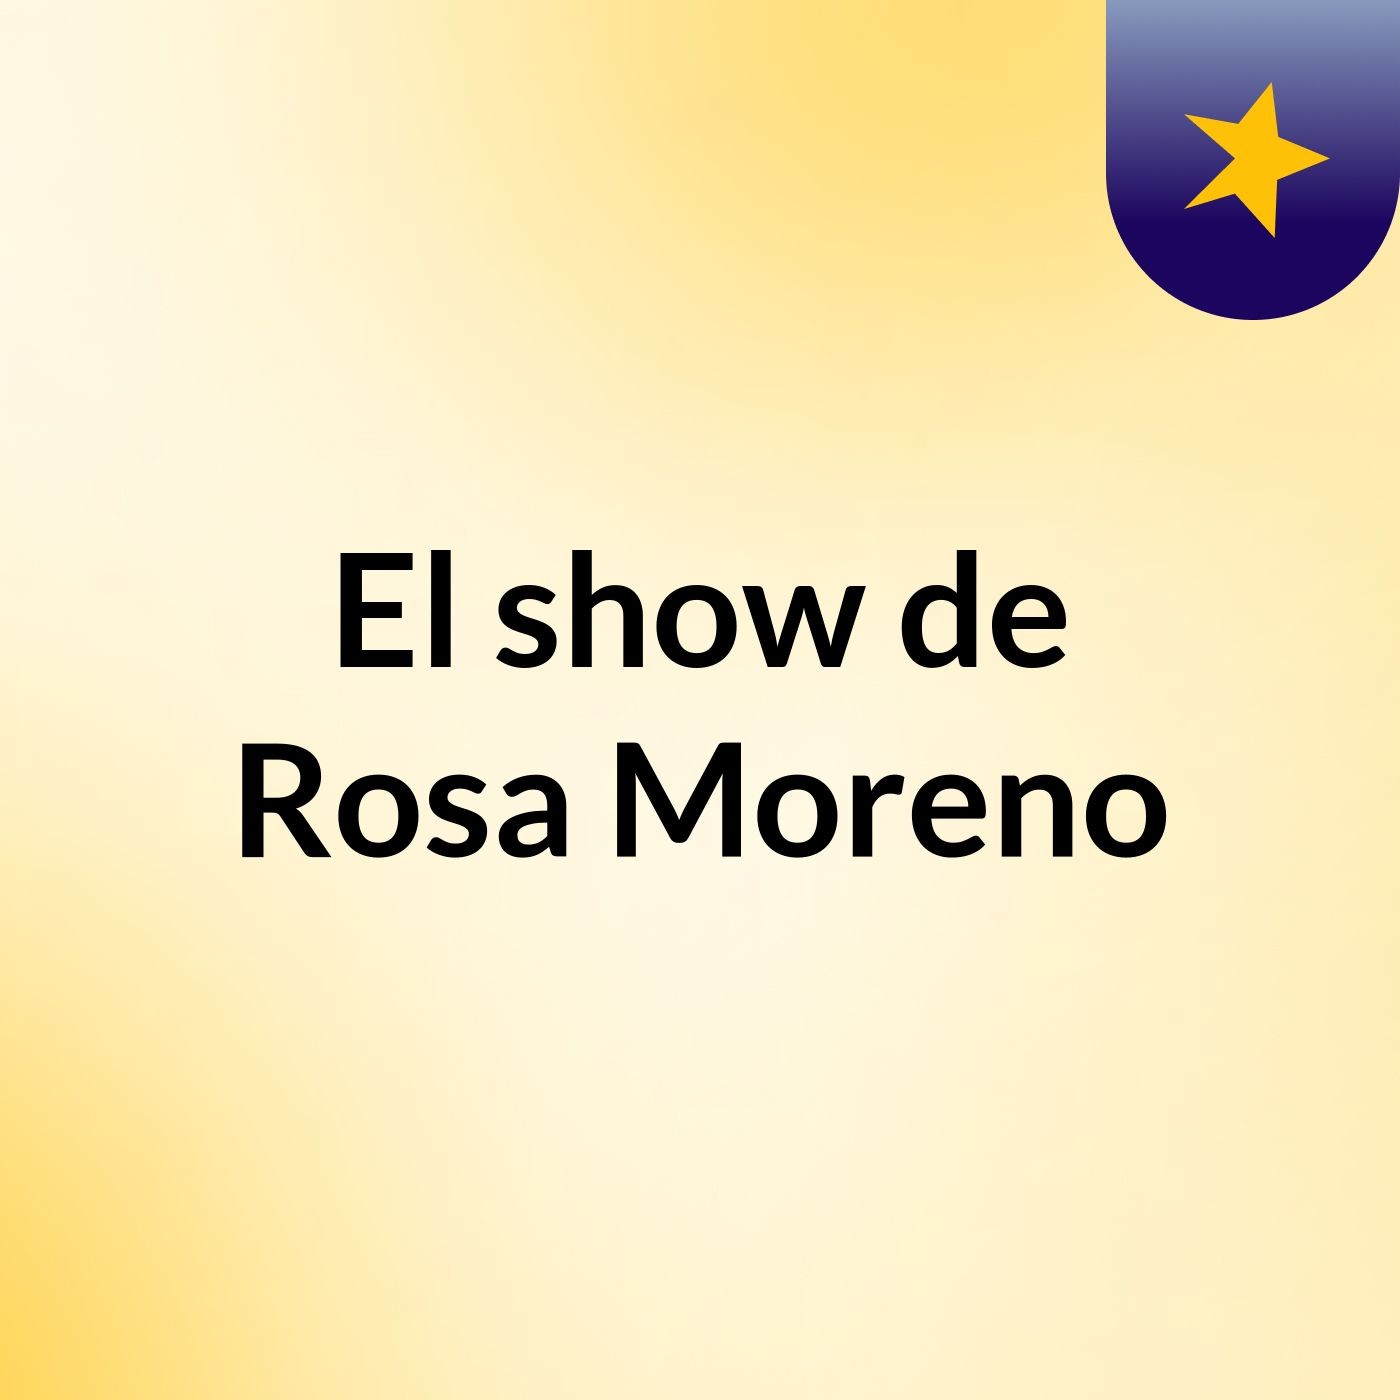 Episodio 7 - El show de Rosa Moreno